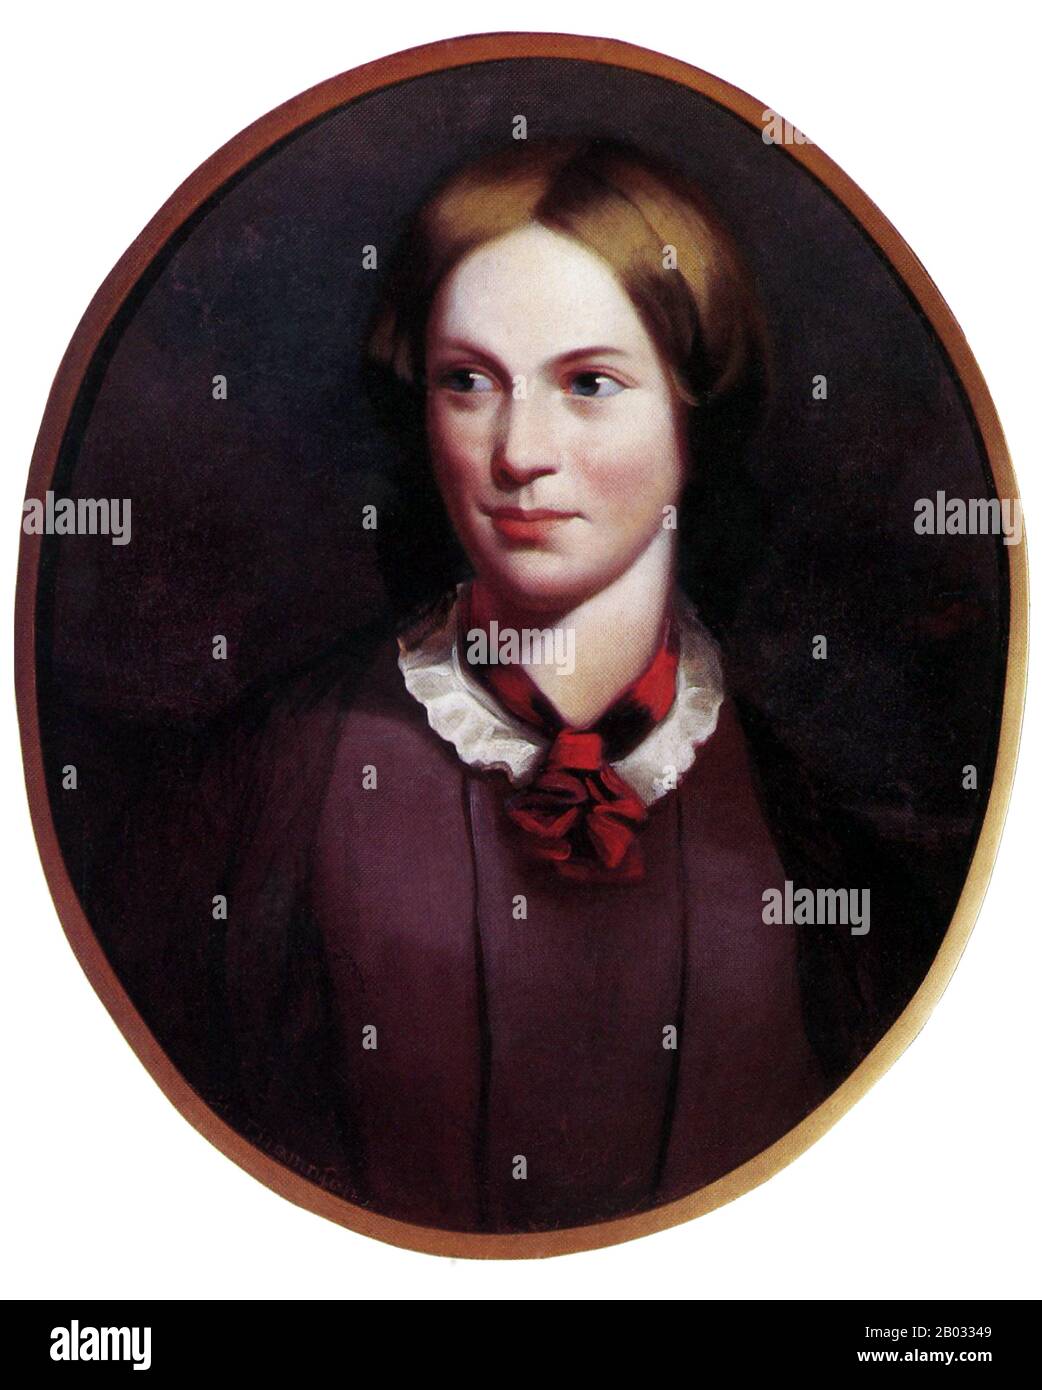 Charlotte Brontë (Brontë, 21 aprile 1816 – 31 marzo 1855) è stata una scrittrice e poeta inglese, la più grande delle tre sorelle   sopravvissute all'età adulta e i cui romanzi sono diventati classici della letteratura inglese. Ha pubblicato per la prima volta le sue opere (compreso il suo romanzo più conosciuto, Jane Eyre) sotto il nome della penna Currer Bell. Foto Stock